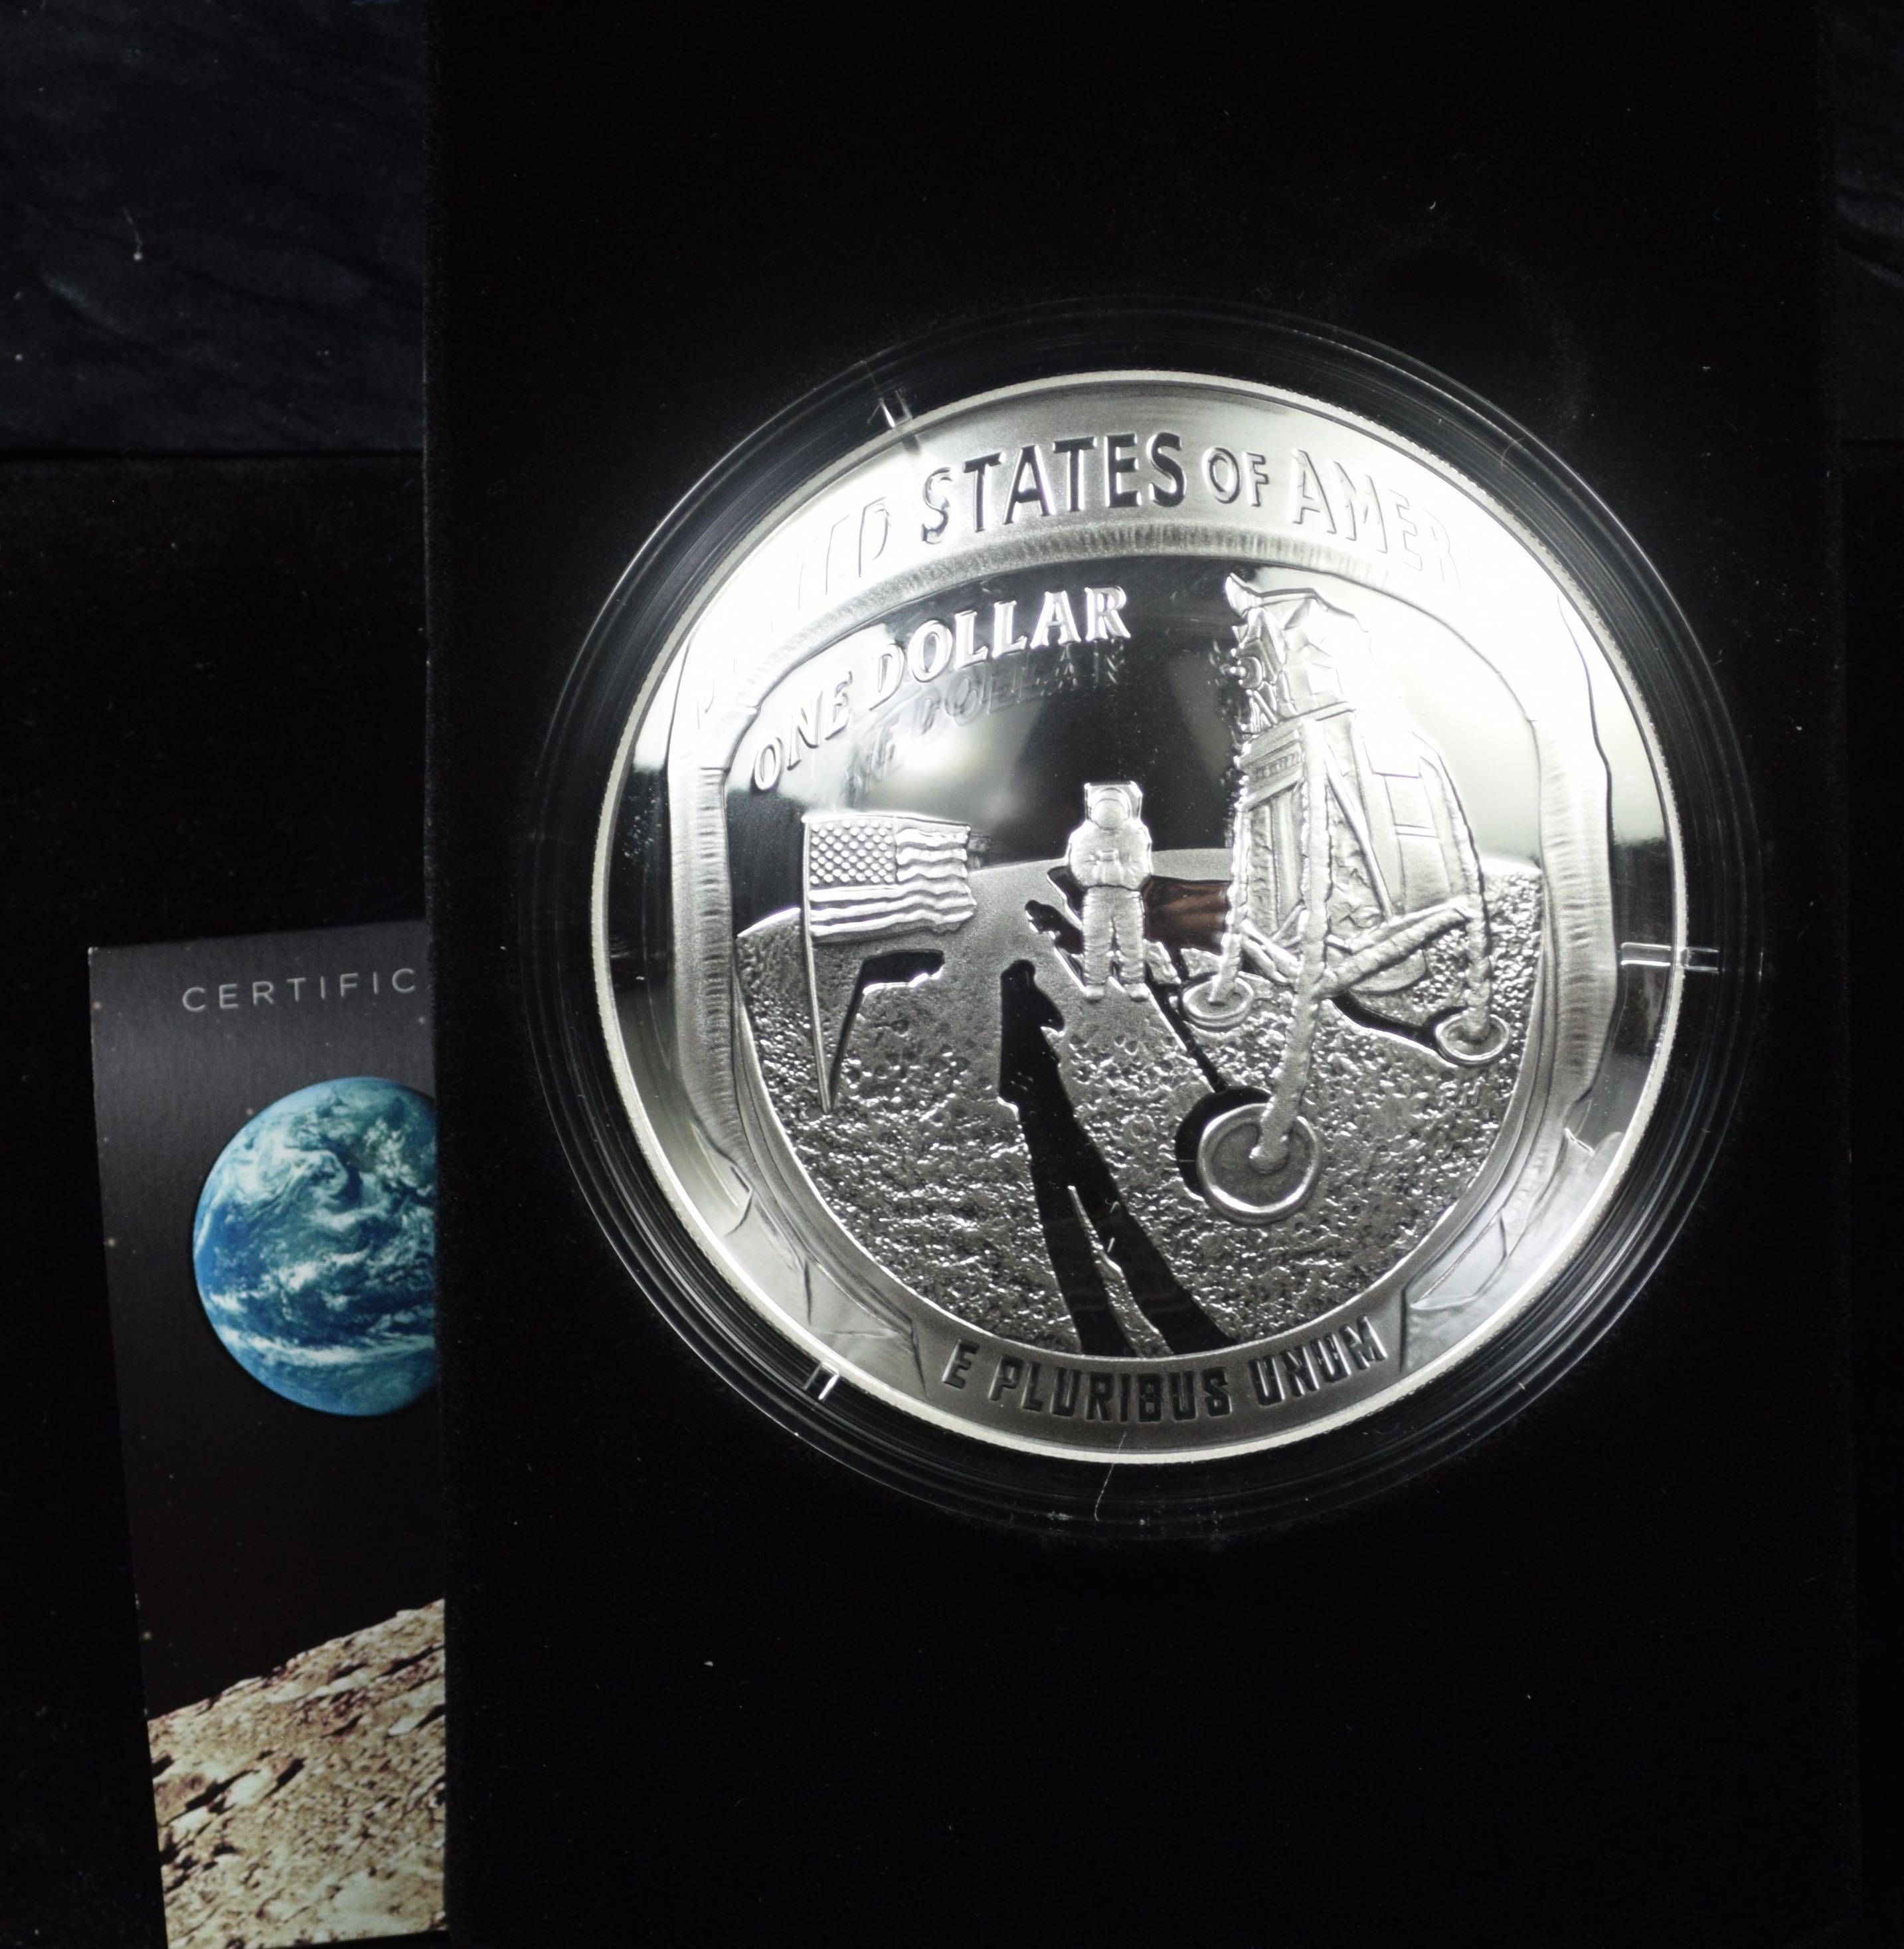 2019 Apollo 11 50th Annv. Commen 5oz Silver Dollar